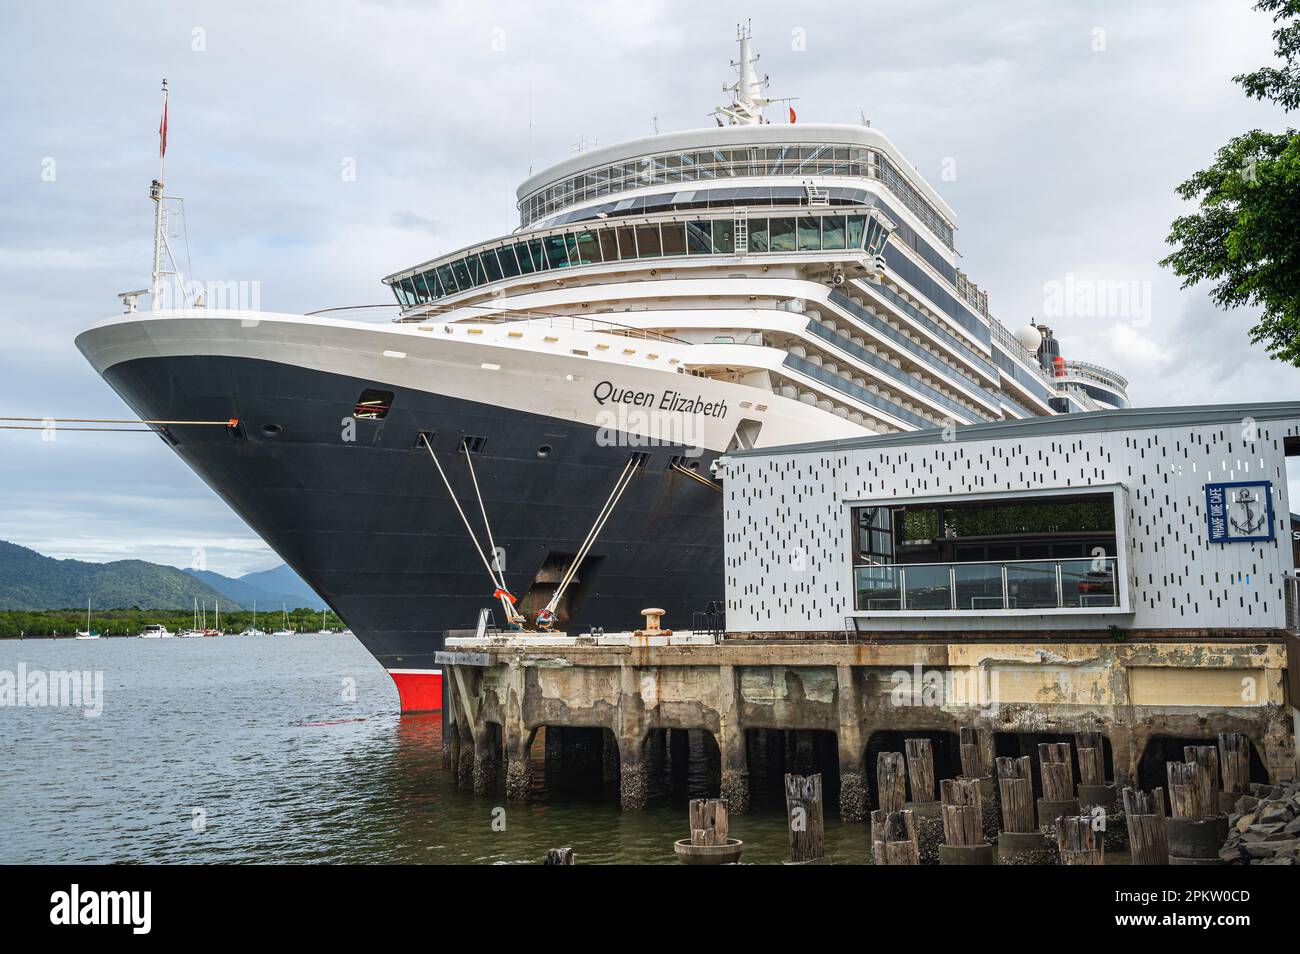 Ein Blick von vorne auf den angedockten Cunard Kreuzfahrtschiff Queen Elizabeth am Cairns Port Authority Wharf, Queensland, Australien. Stockfoto